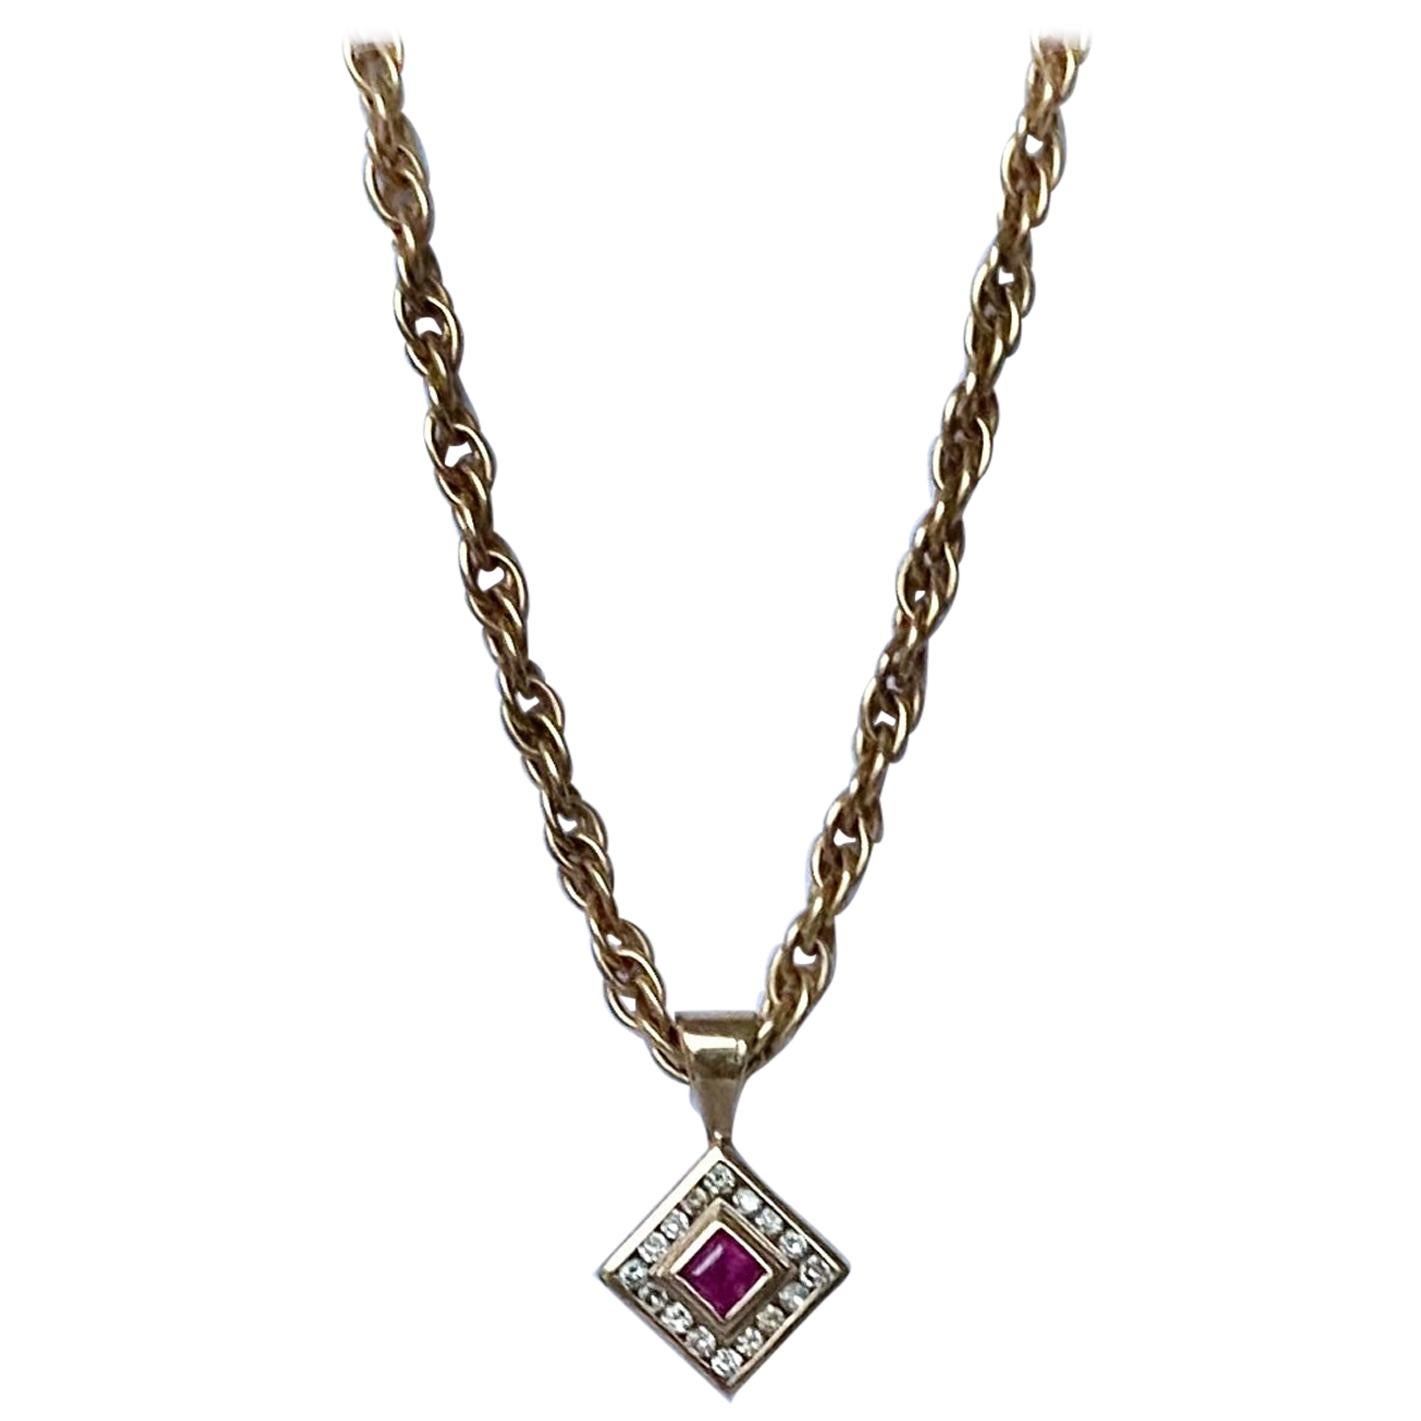 Halskette und Anhänger aus 9 Karat Gold mit Rubin und Diamant